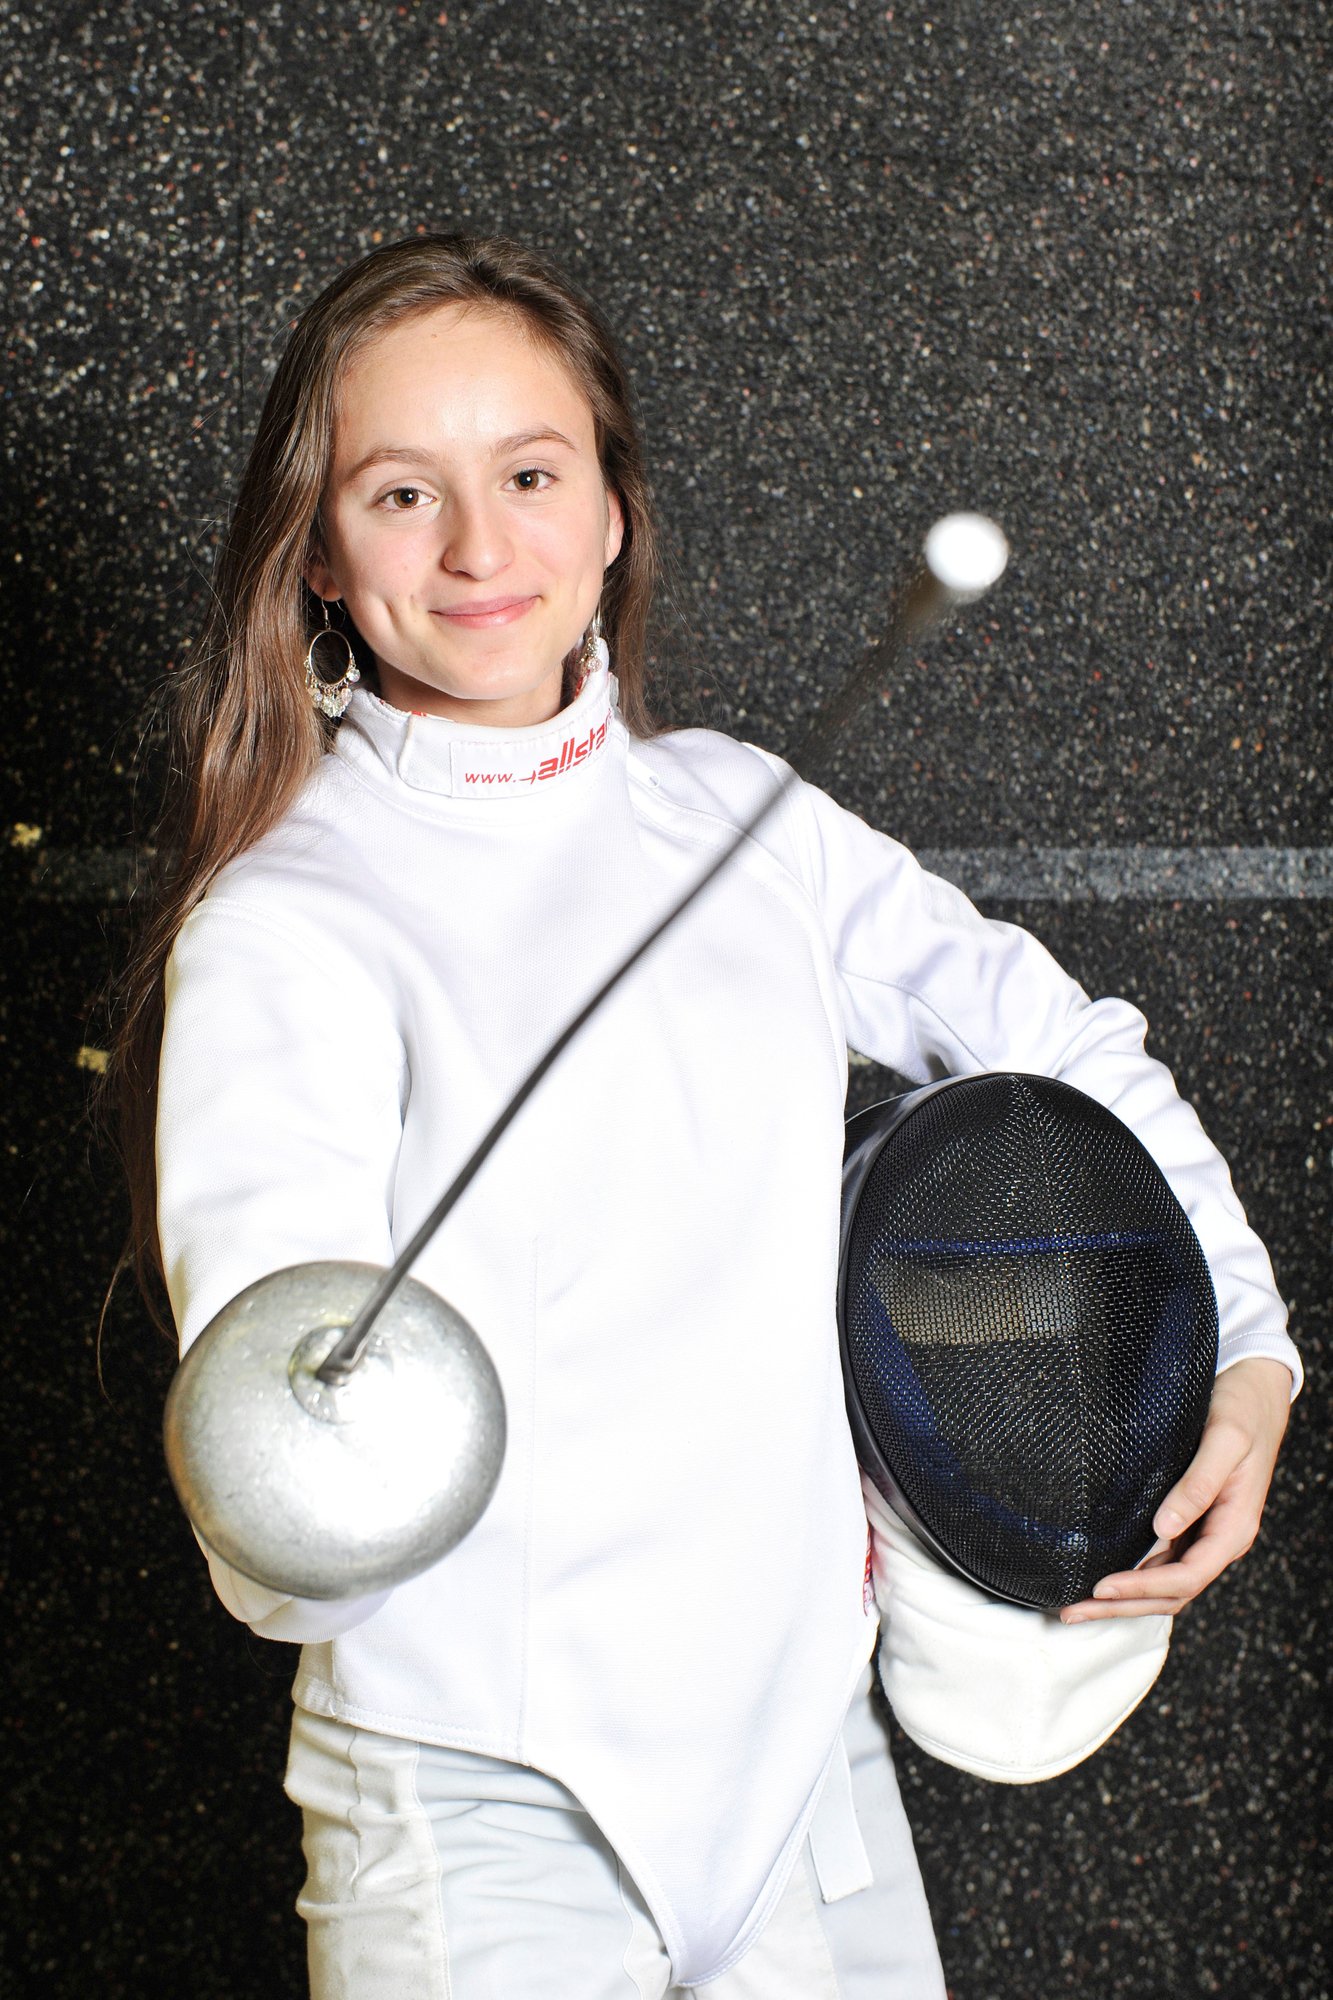 Angeline Favre s'est classée 15e des Mondiaux juniors en escrime.